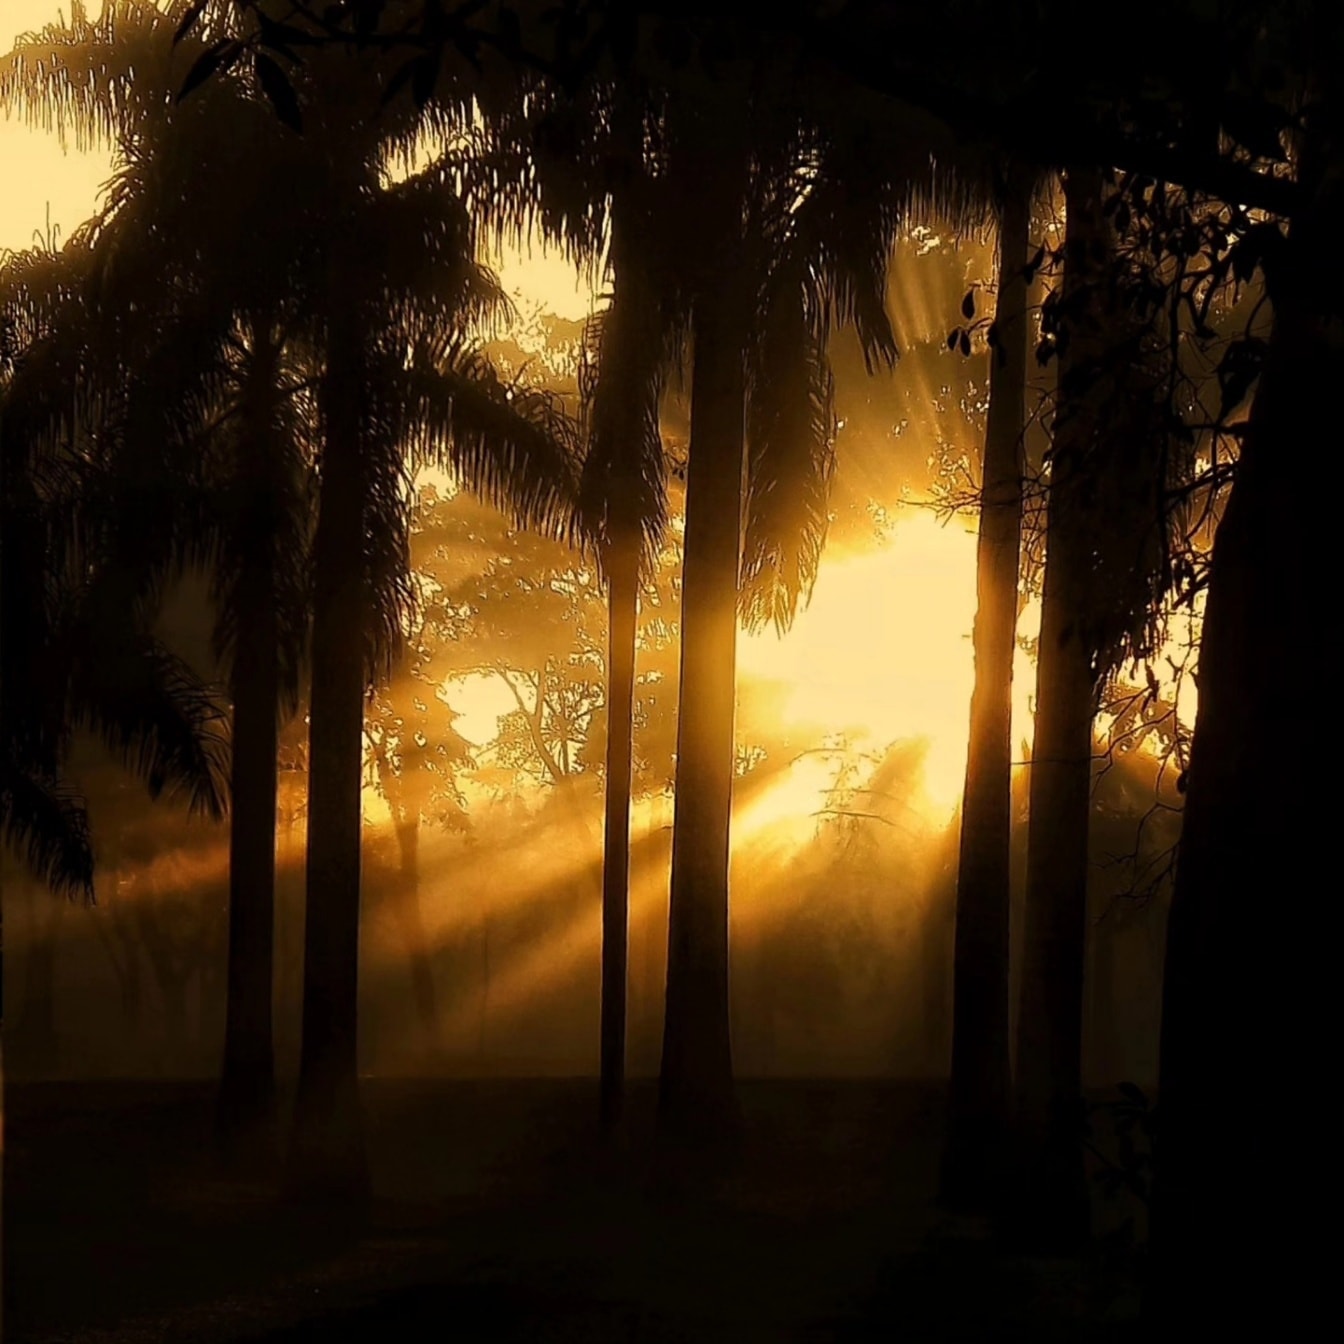 Графика ярких лучей Солнца в темном лесу с силуэтом деревьев в тени